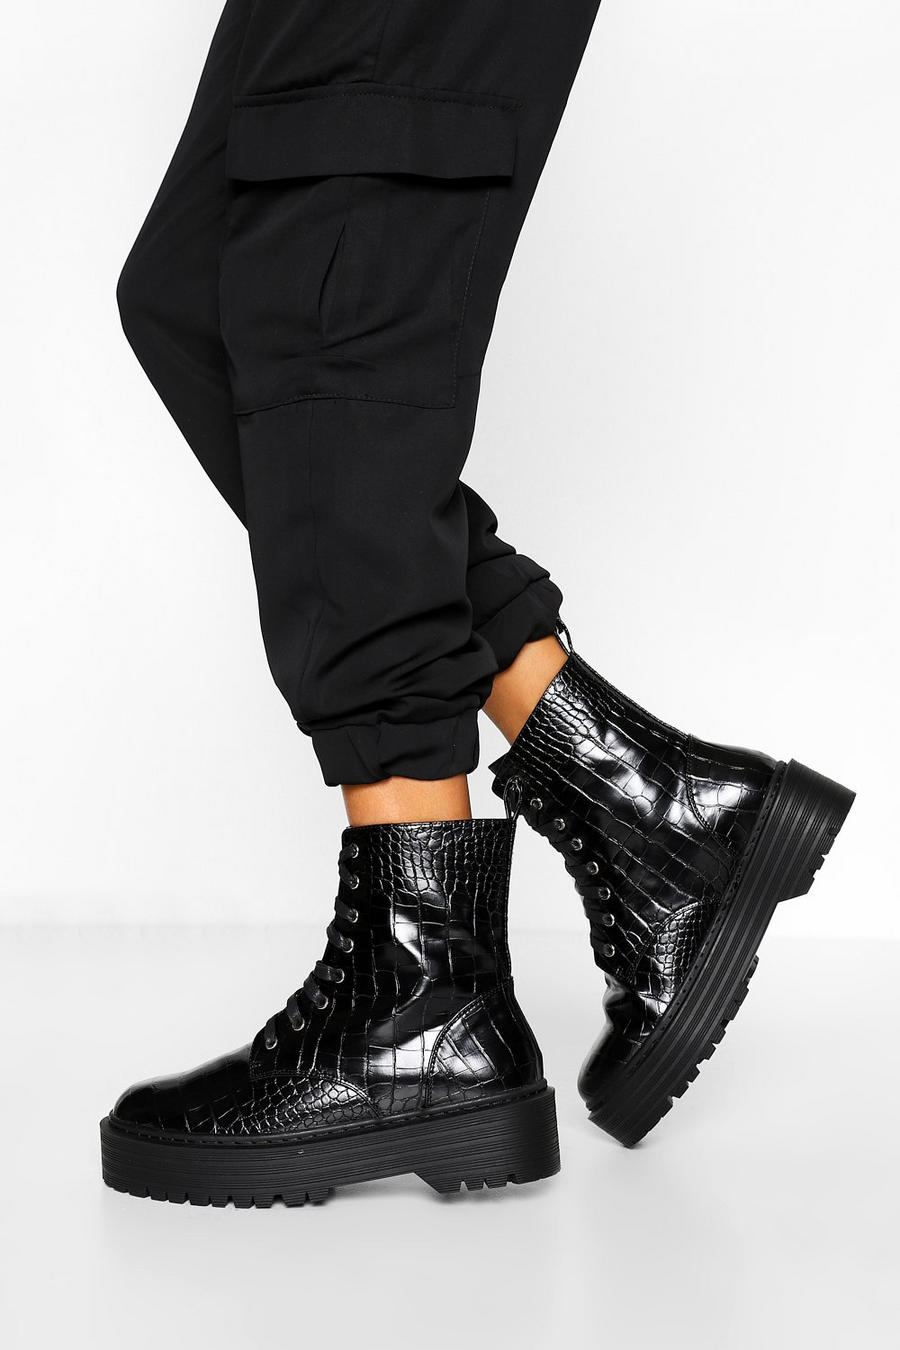 Scarponcini a calzata ampia effetto coccodrillo con suola spessa, Nero negro